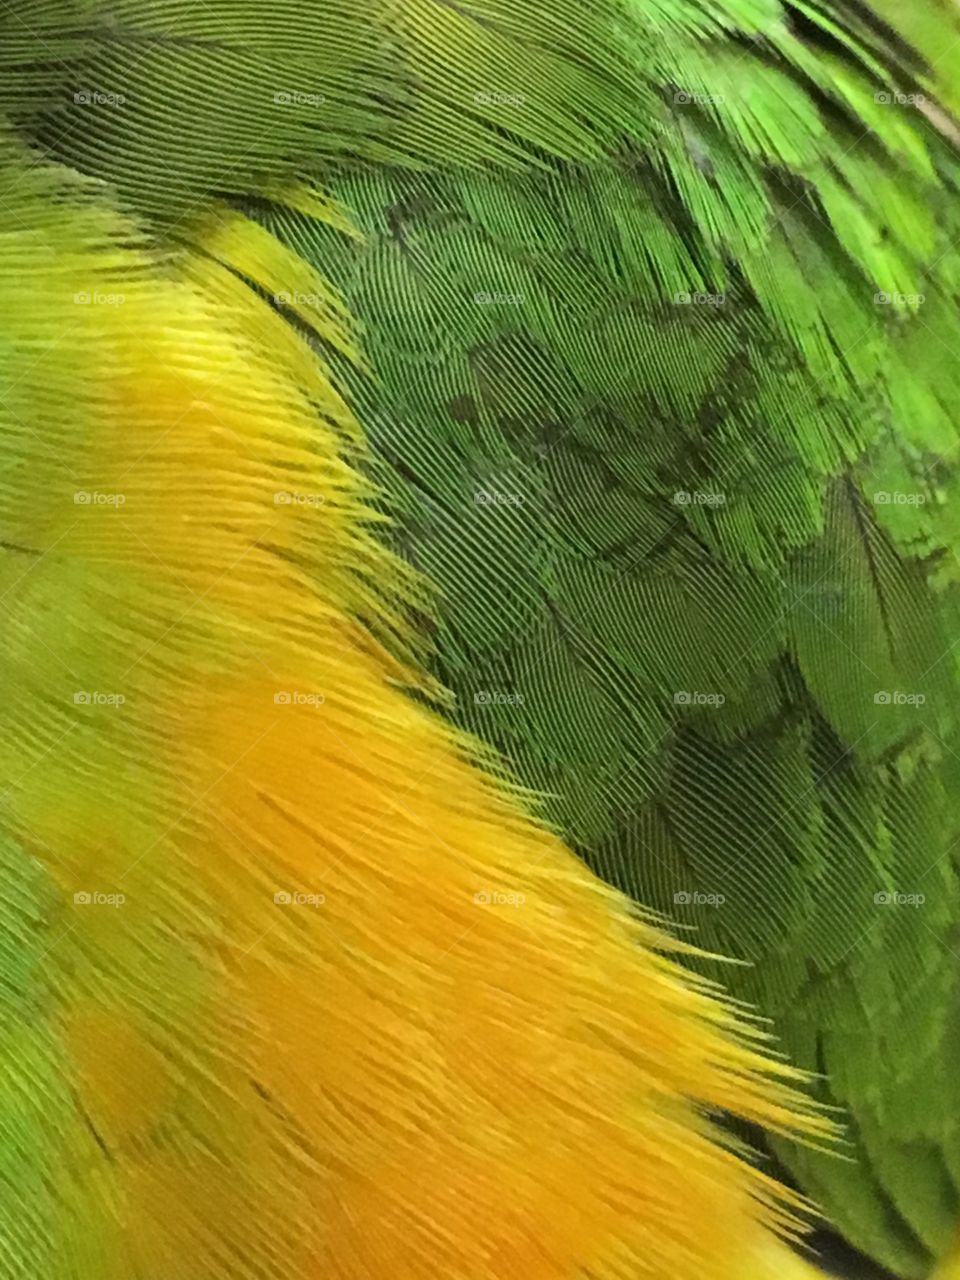 Senegal parrot feathers 